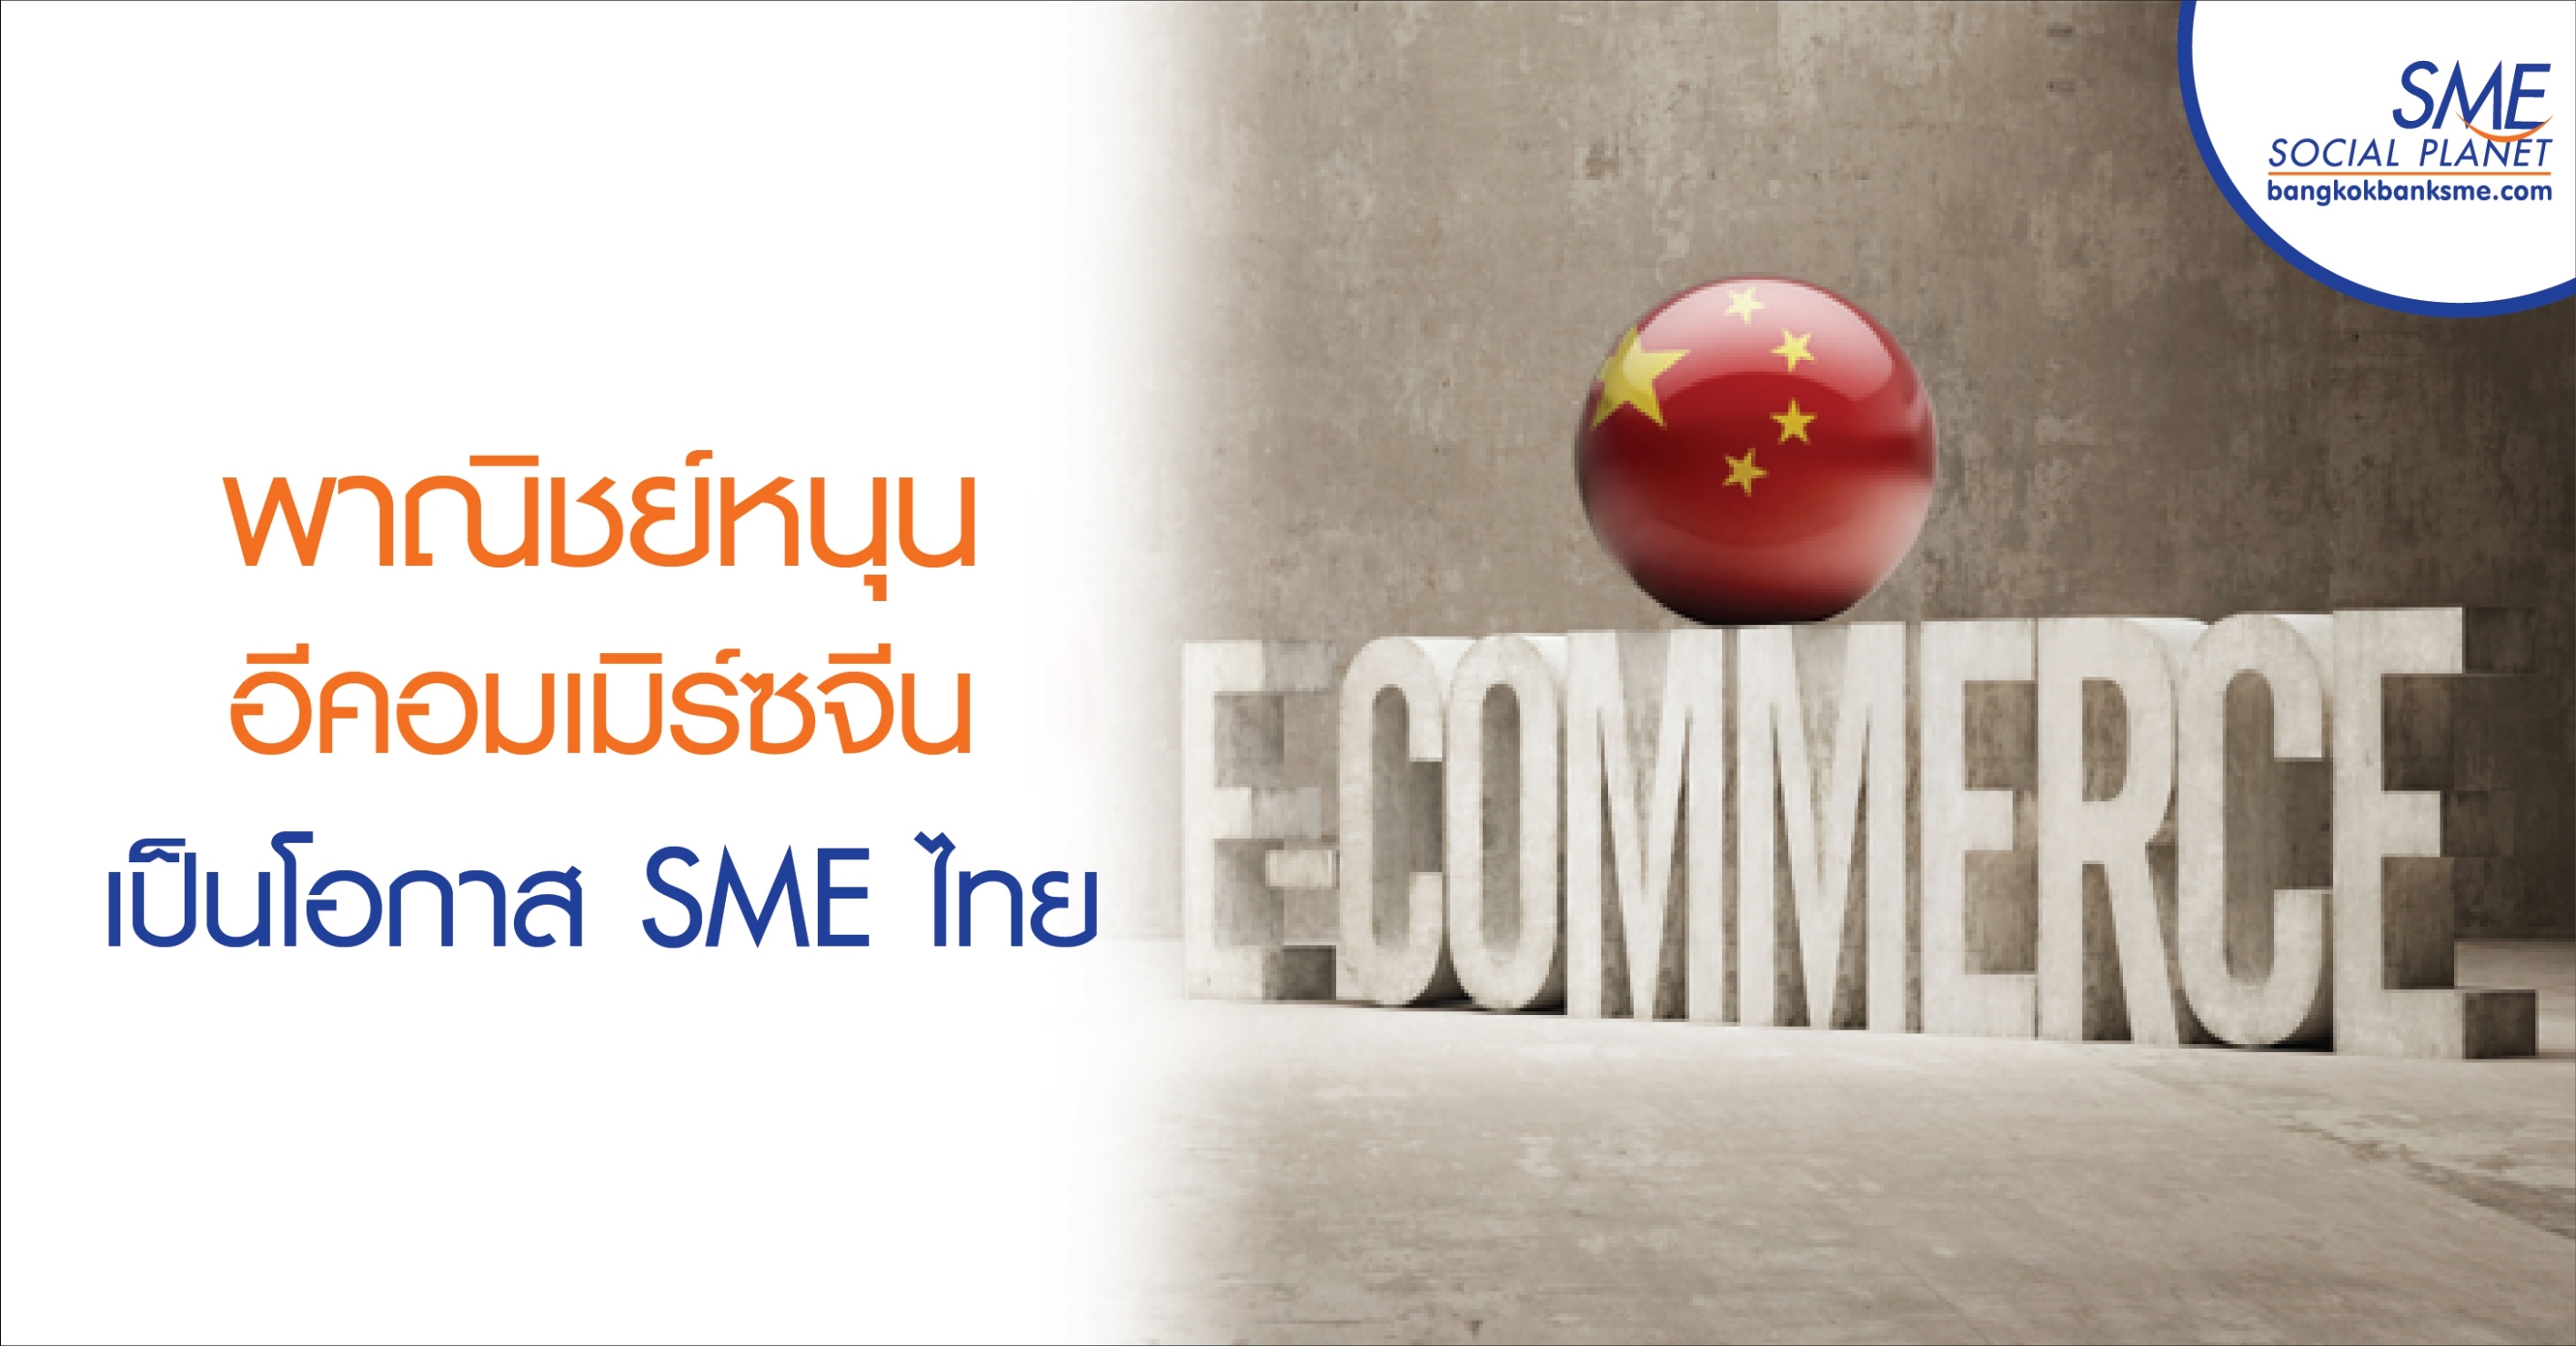 พาณิชย์หนุนอีคอมเมิร์ซจีนเป็นโอกาส SME ไทย